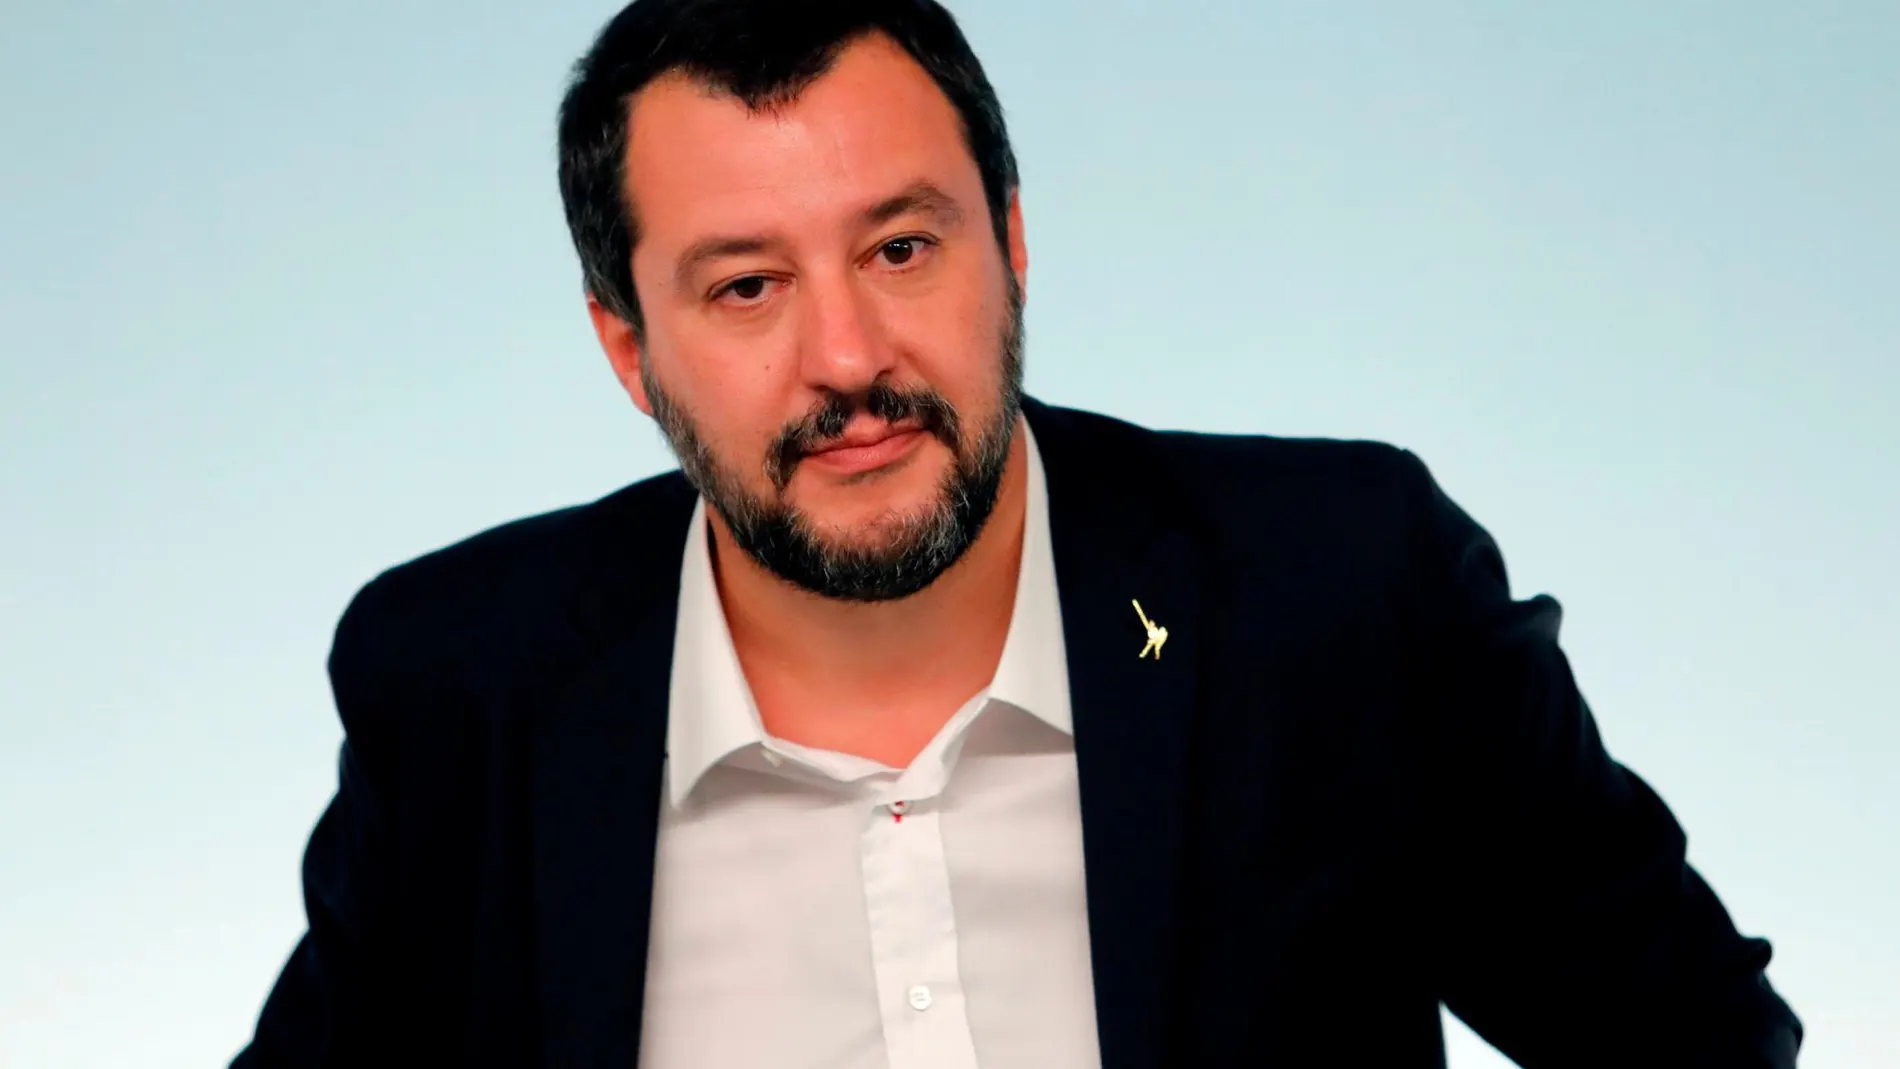 El ministro de Interior italiano, Matteo Salvini, en una imagen de archivo